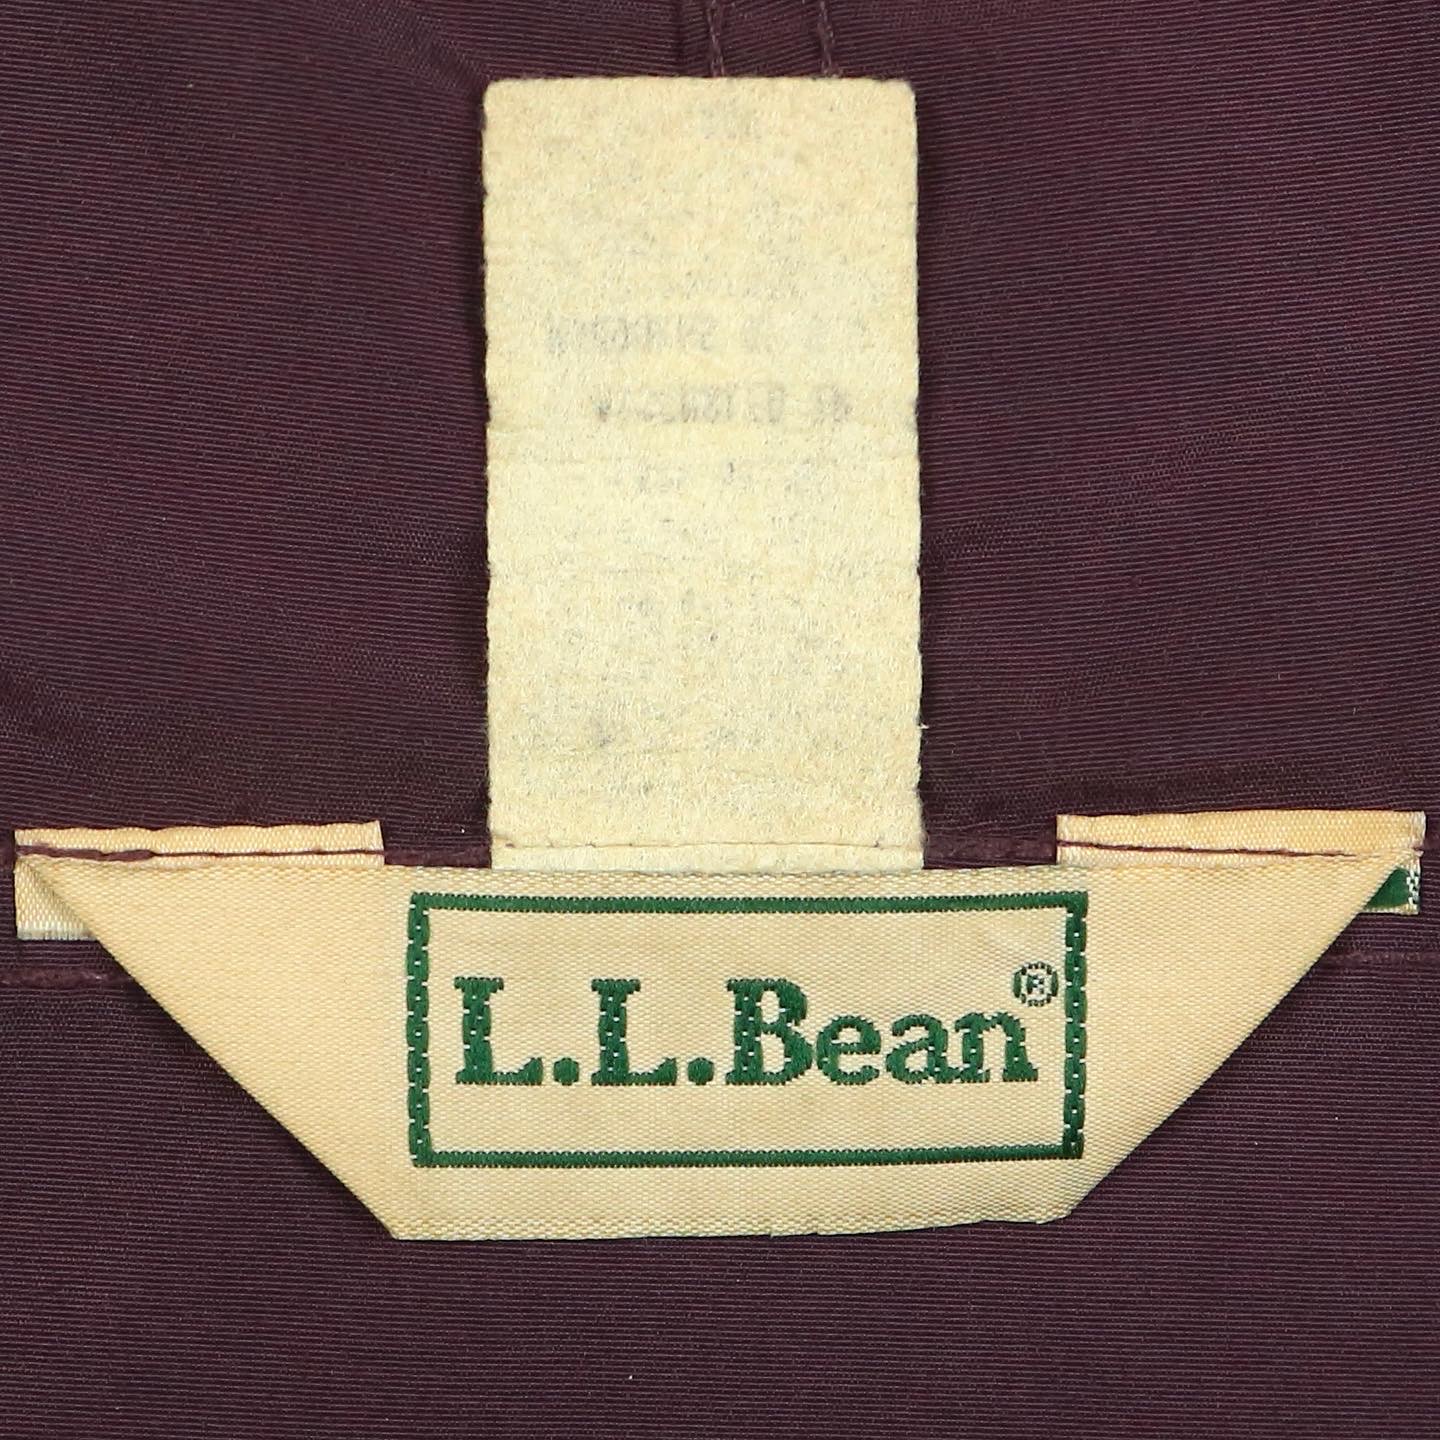 L.L.Bean Mountain Classic Anorak Size XL